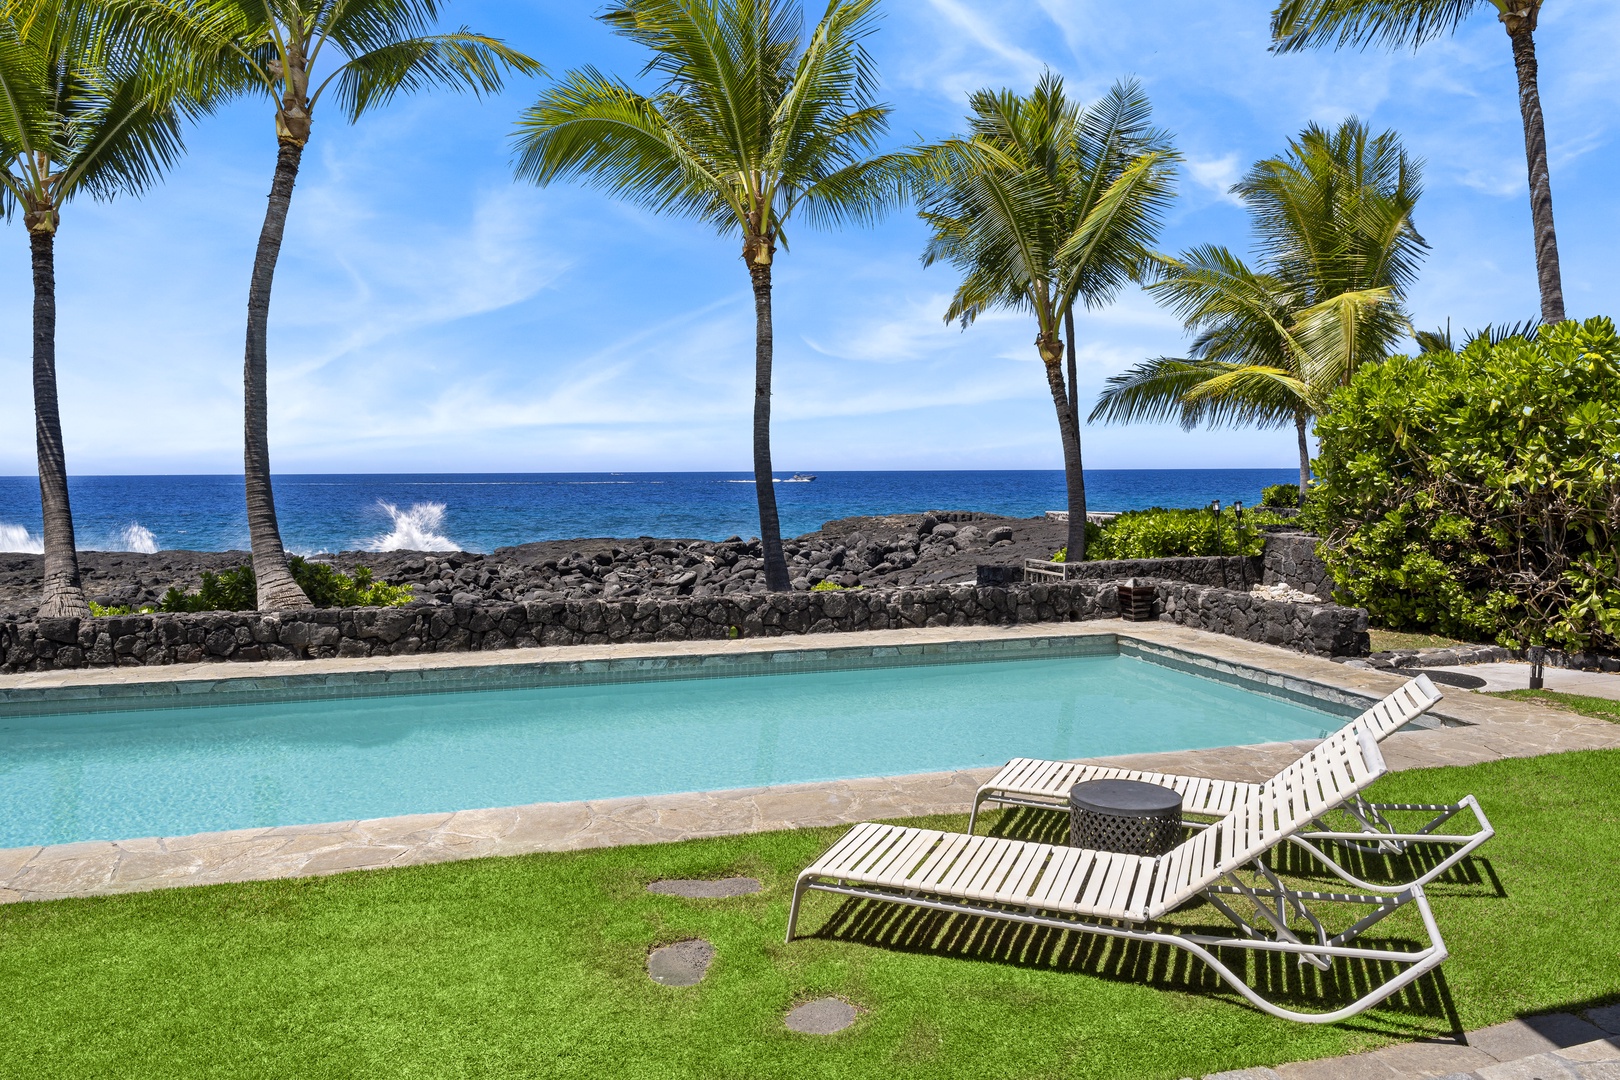 Kailua Kona Vacation Rentals, Kona Blue - Loungers pool side to take in the Kona rays